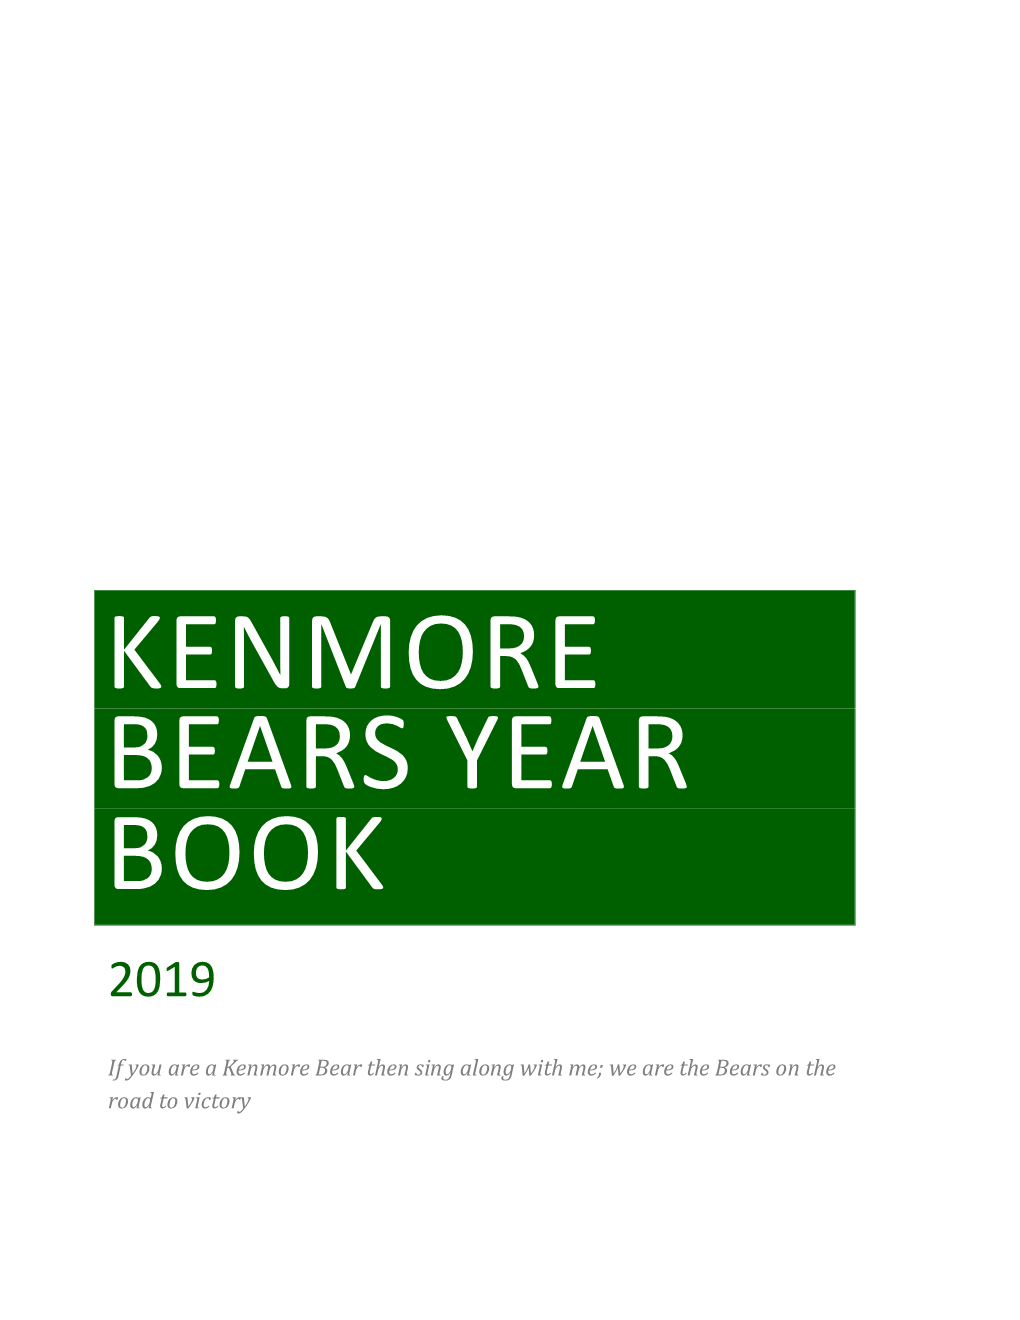 Kenmore Bears Year Book 2019